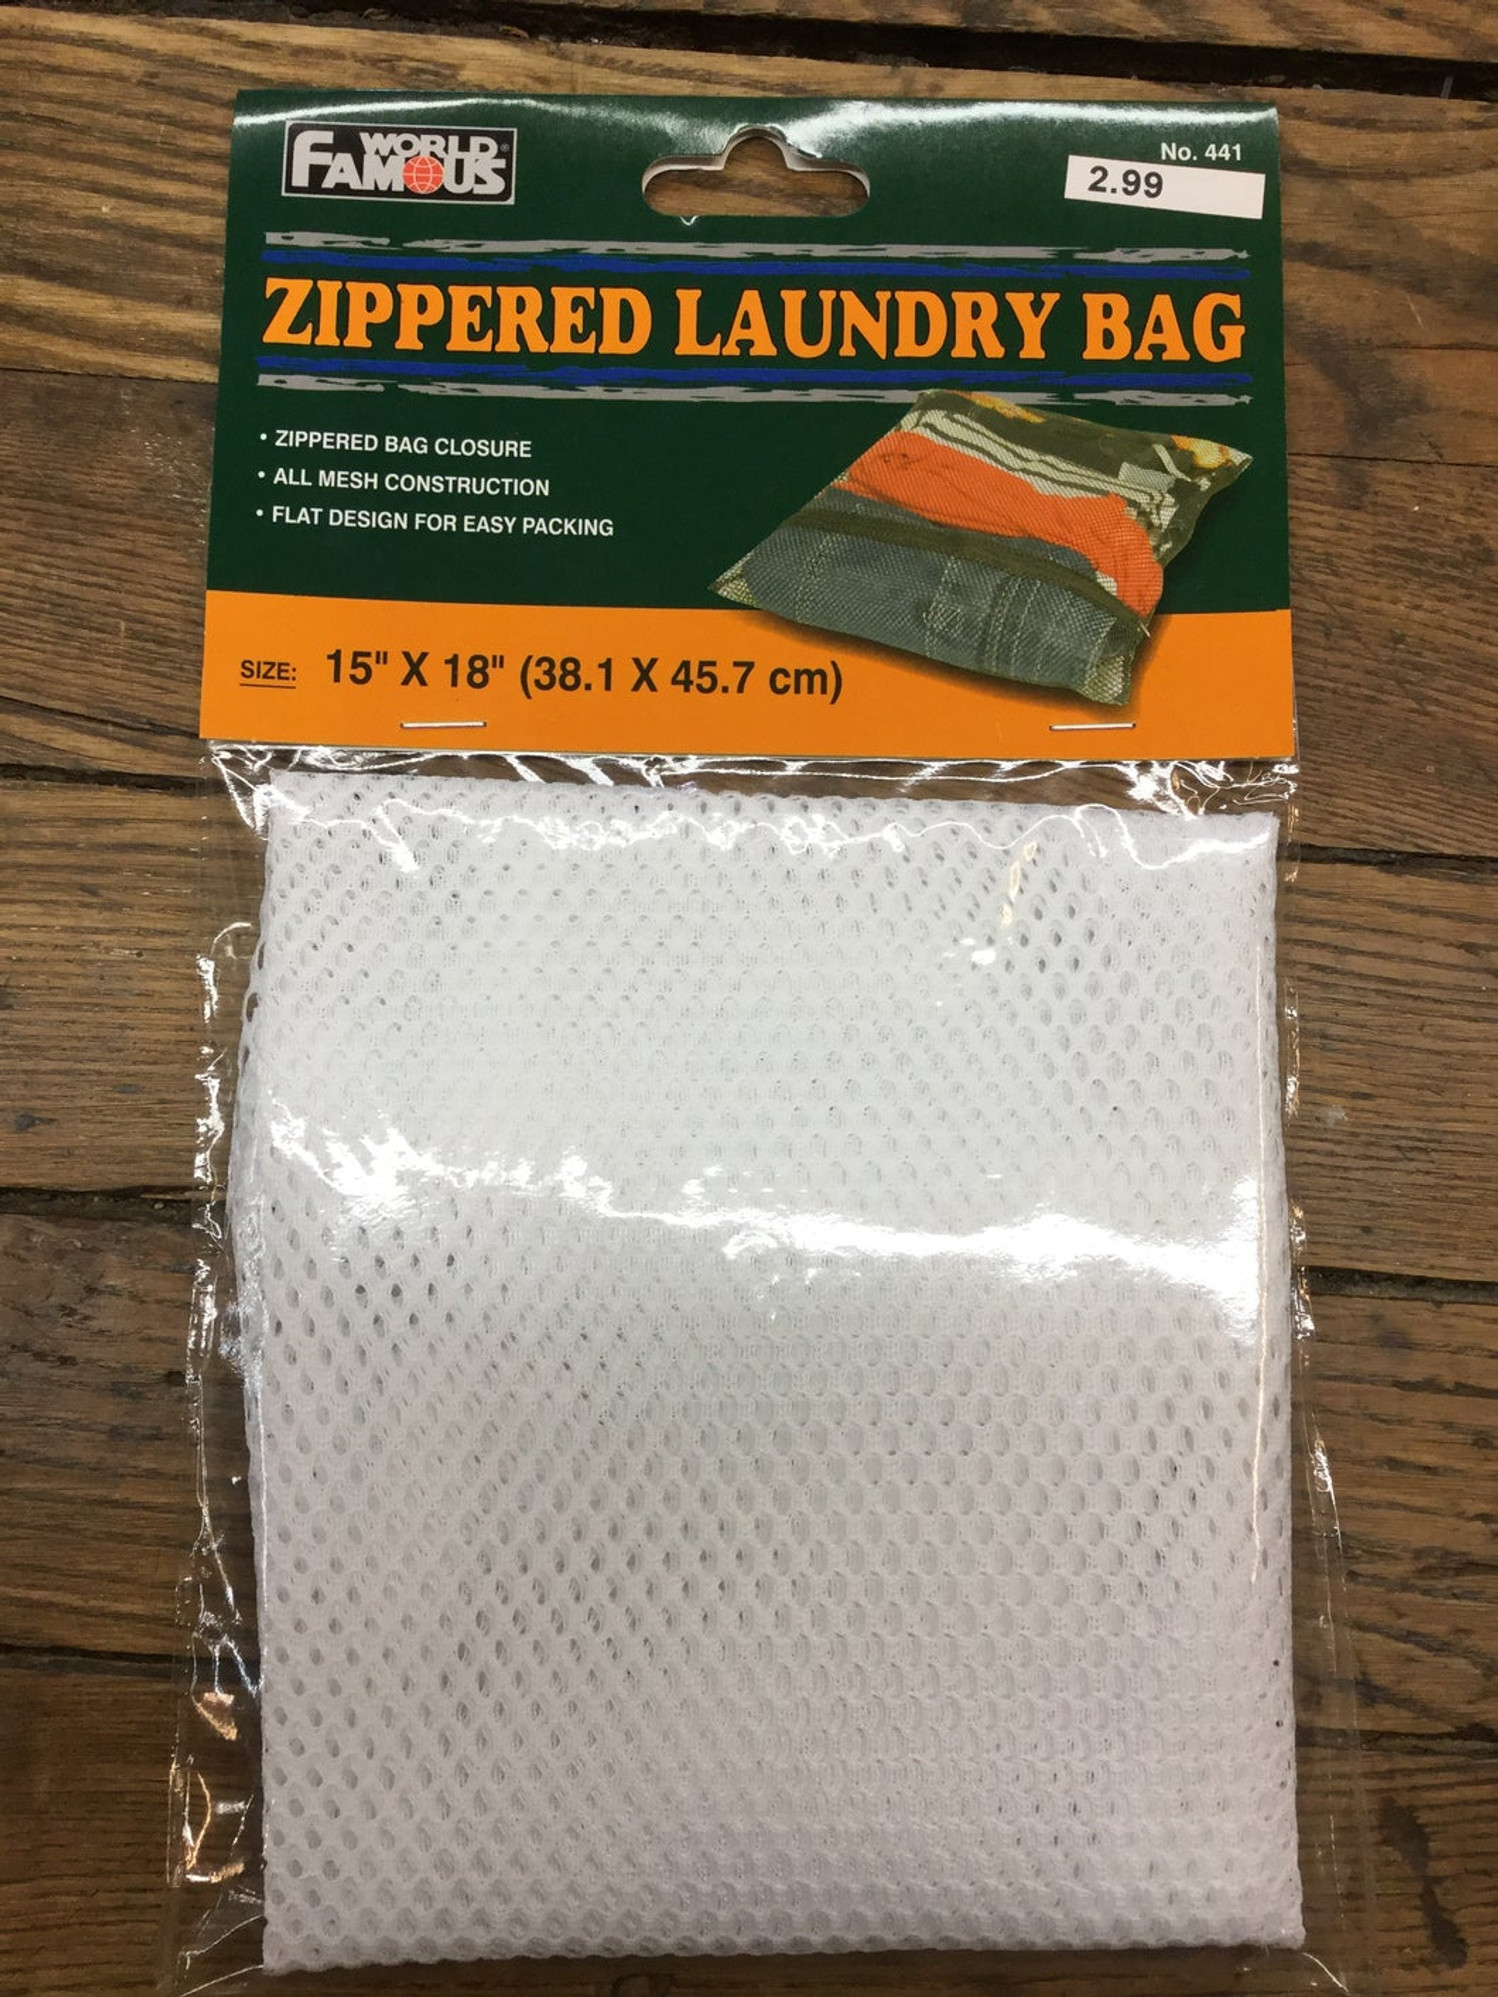 World Famous Zippered Laundry Bag